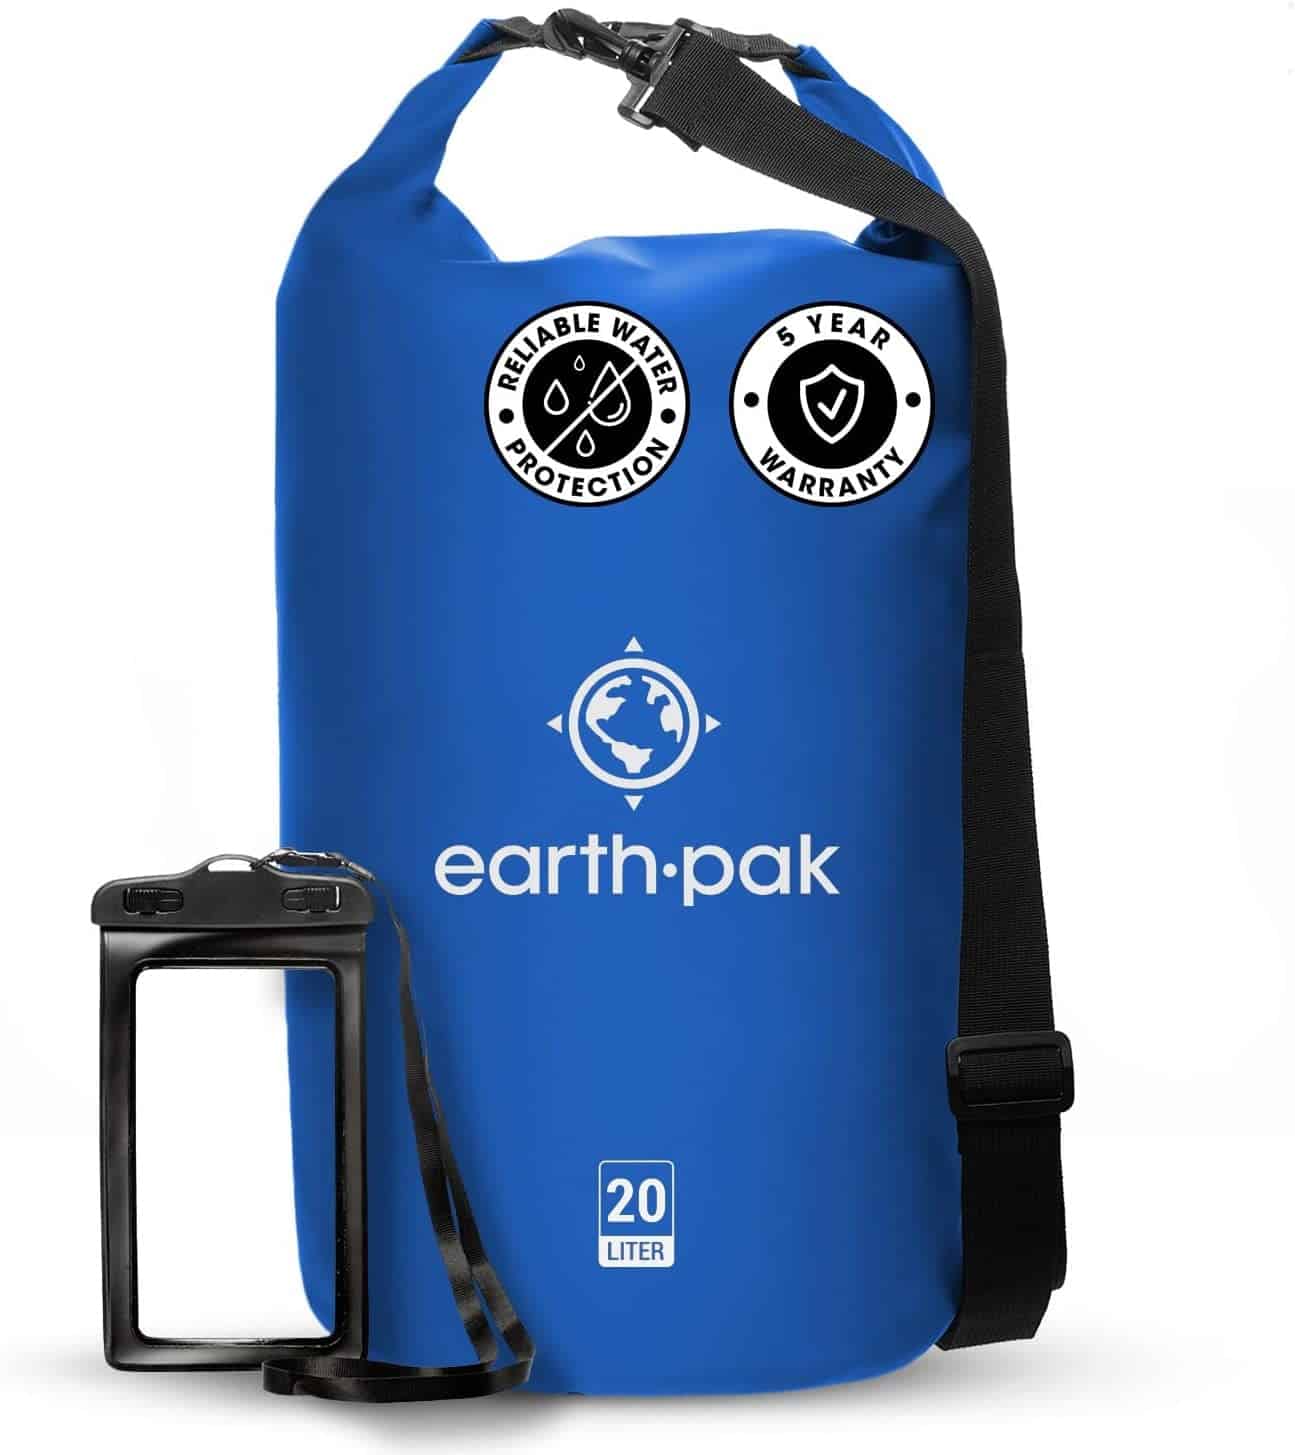 The Earth Pak Waterproof Dry Bag